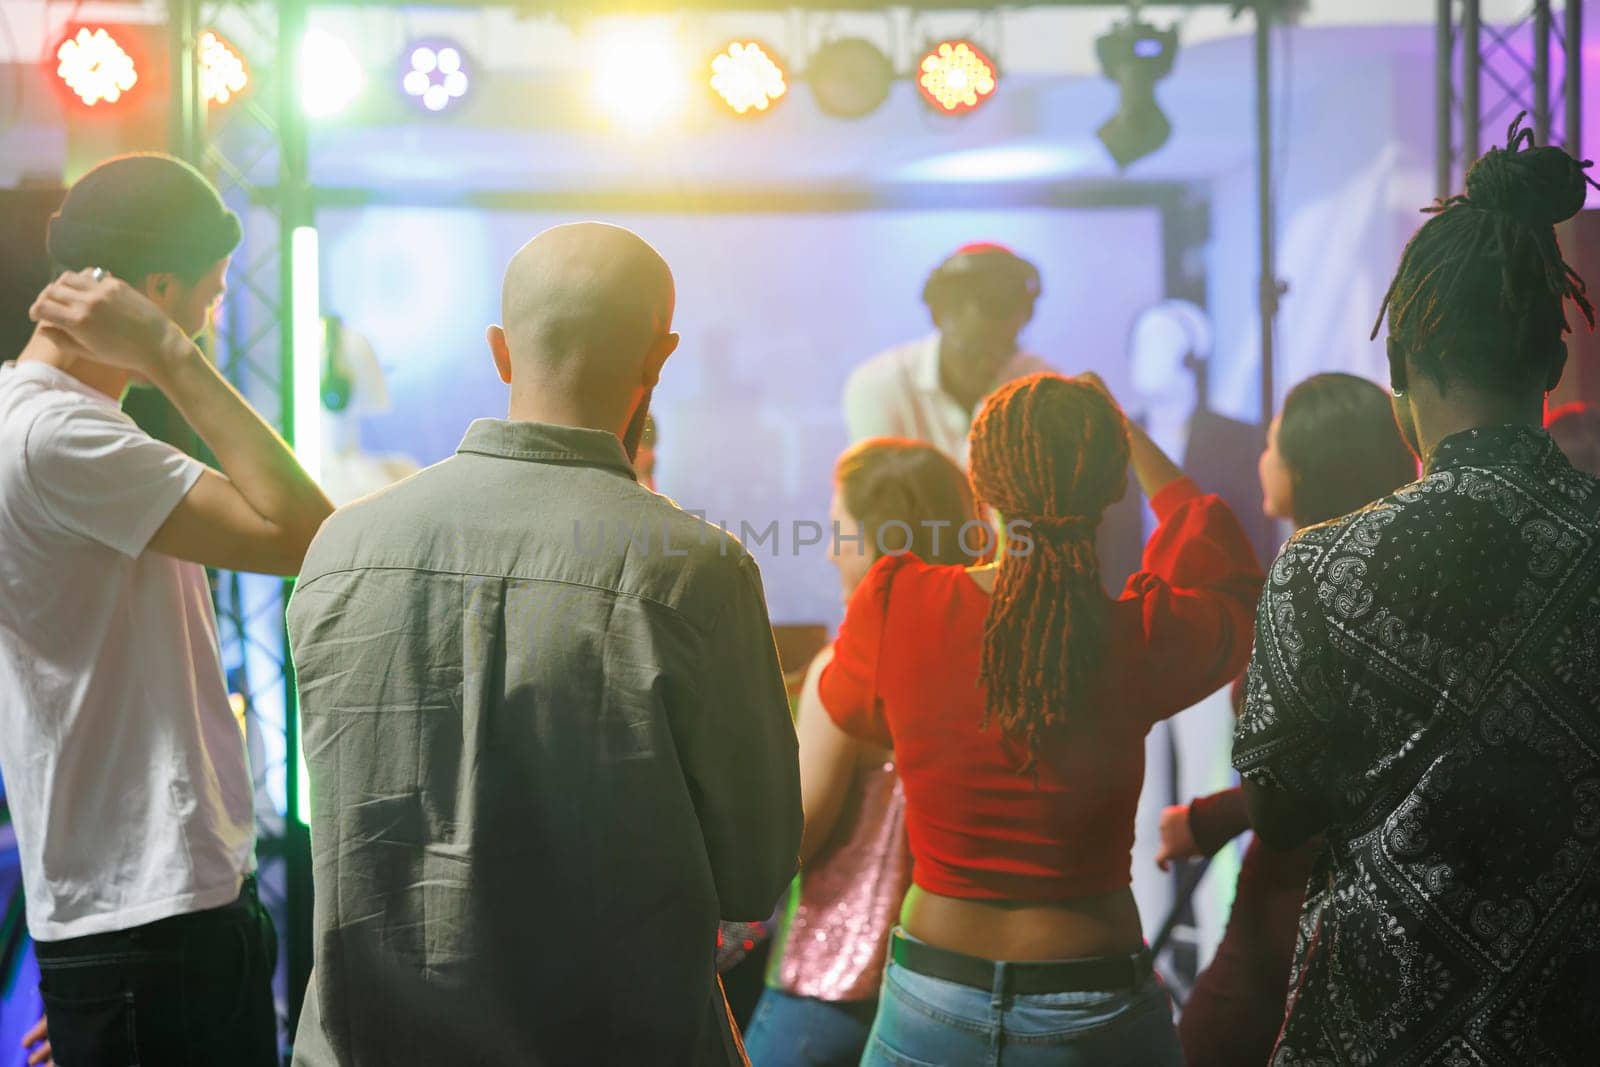 People standing on dancefloor in club by DCStudio